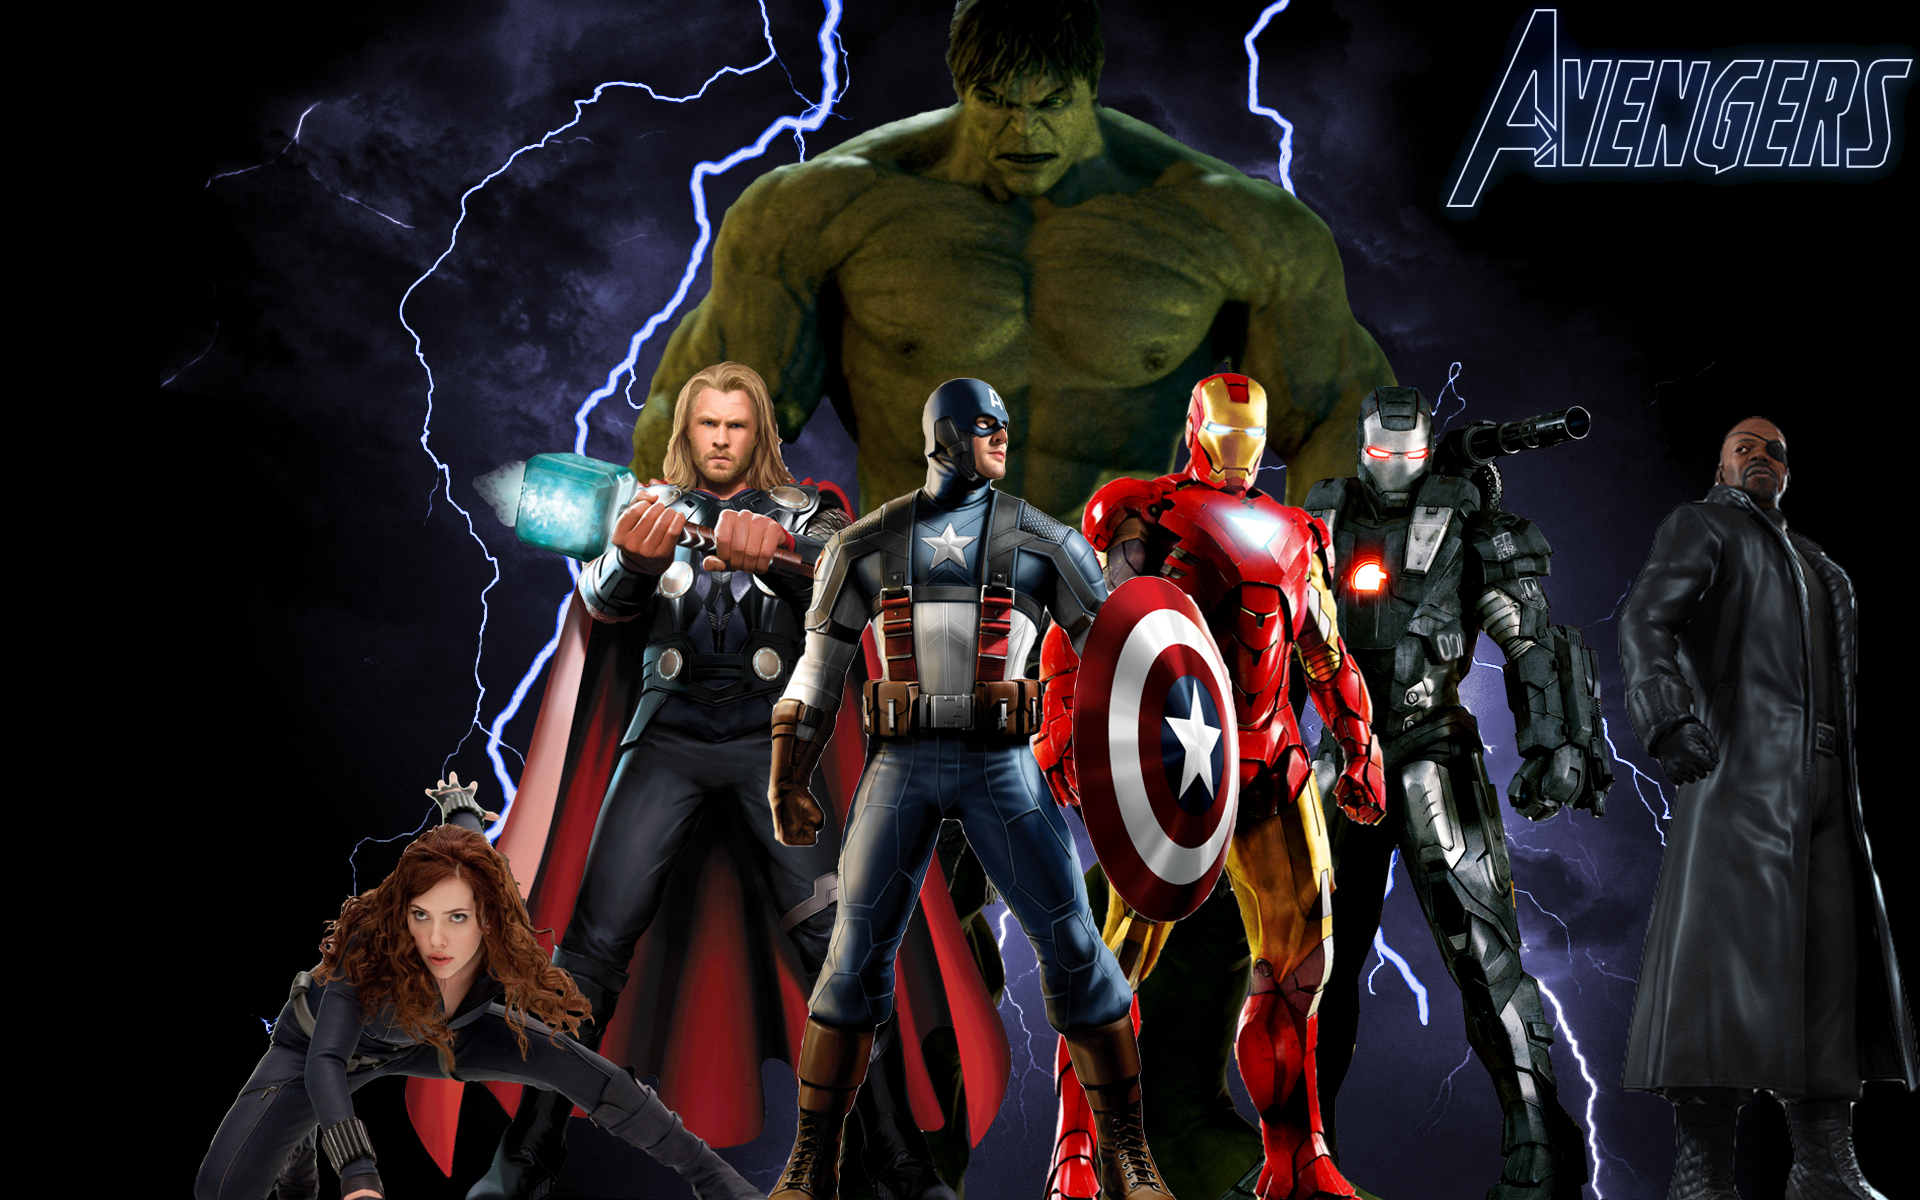 The Avengers Full Movie Online